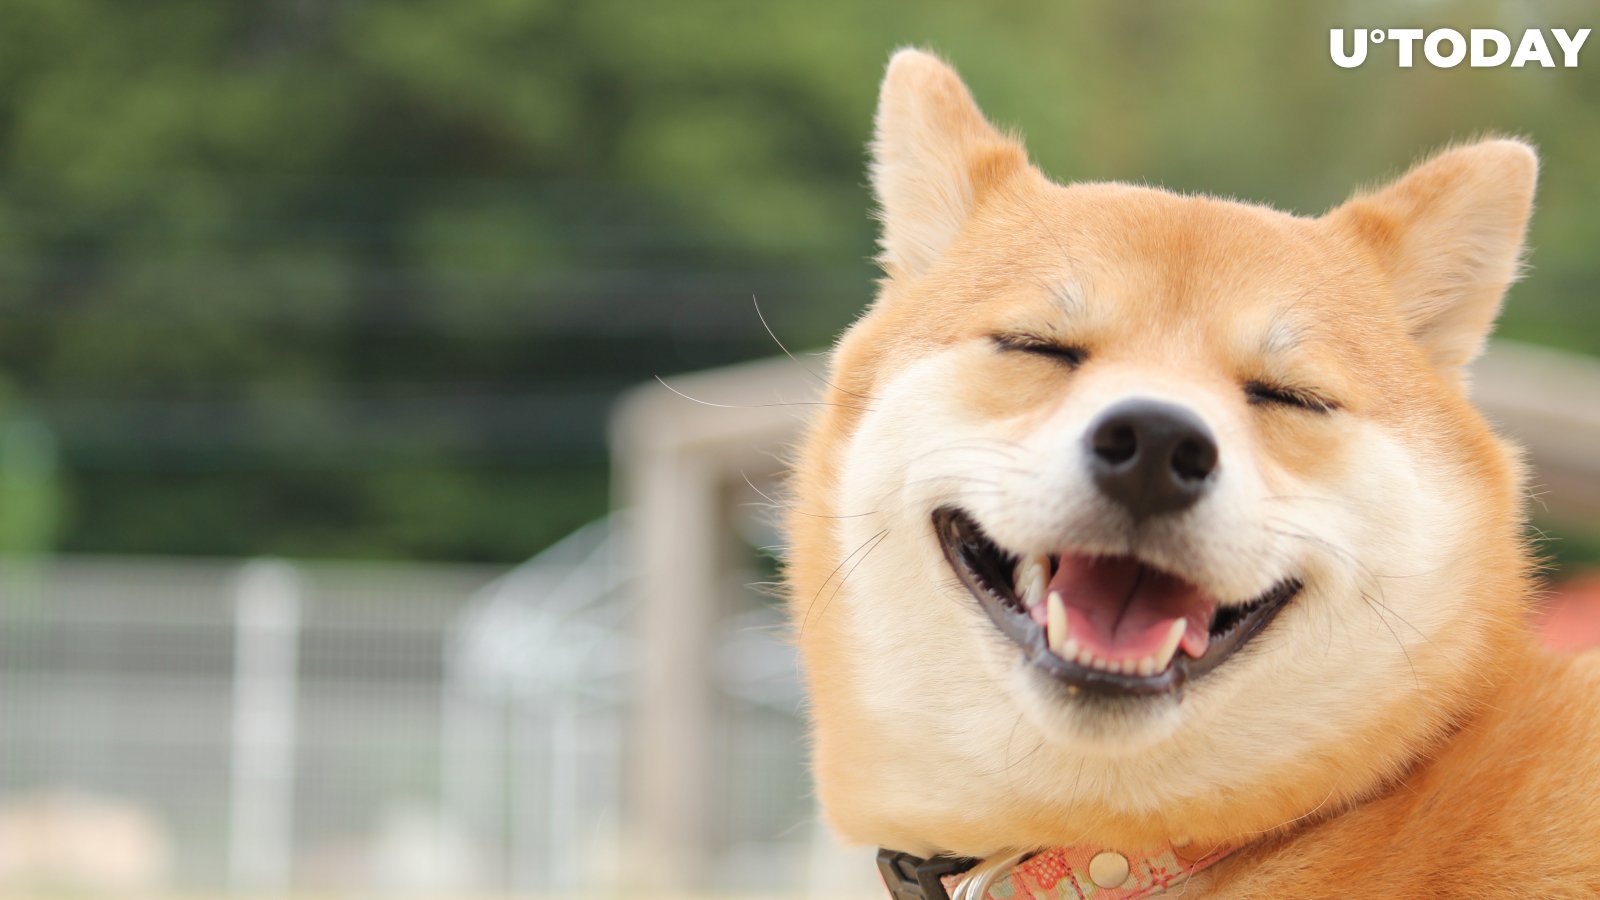 Vitalik Buterin Just Burned $6 Billion Worth of Dogecoin Rival Shiba Inu